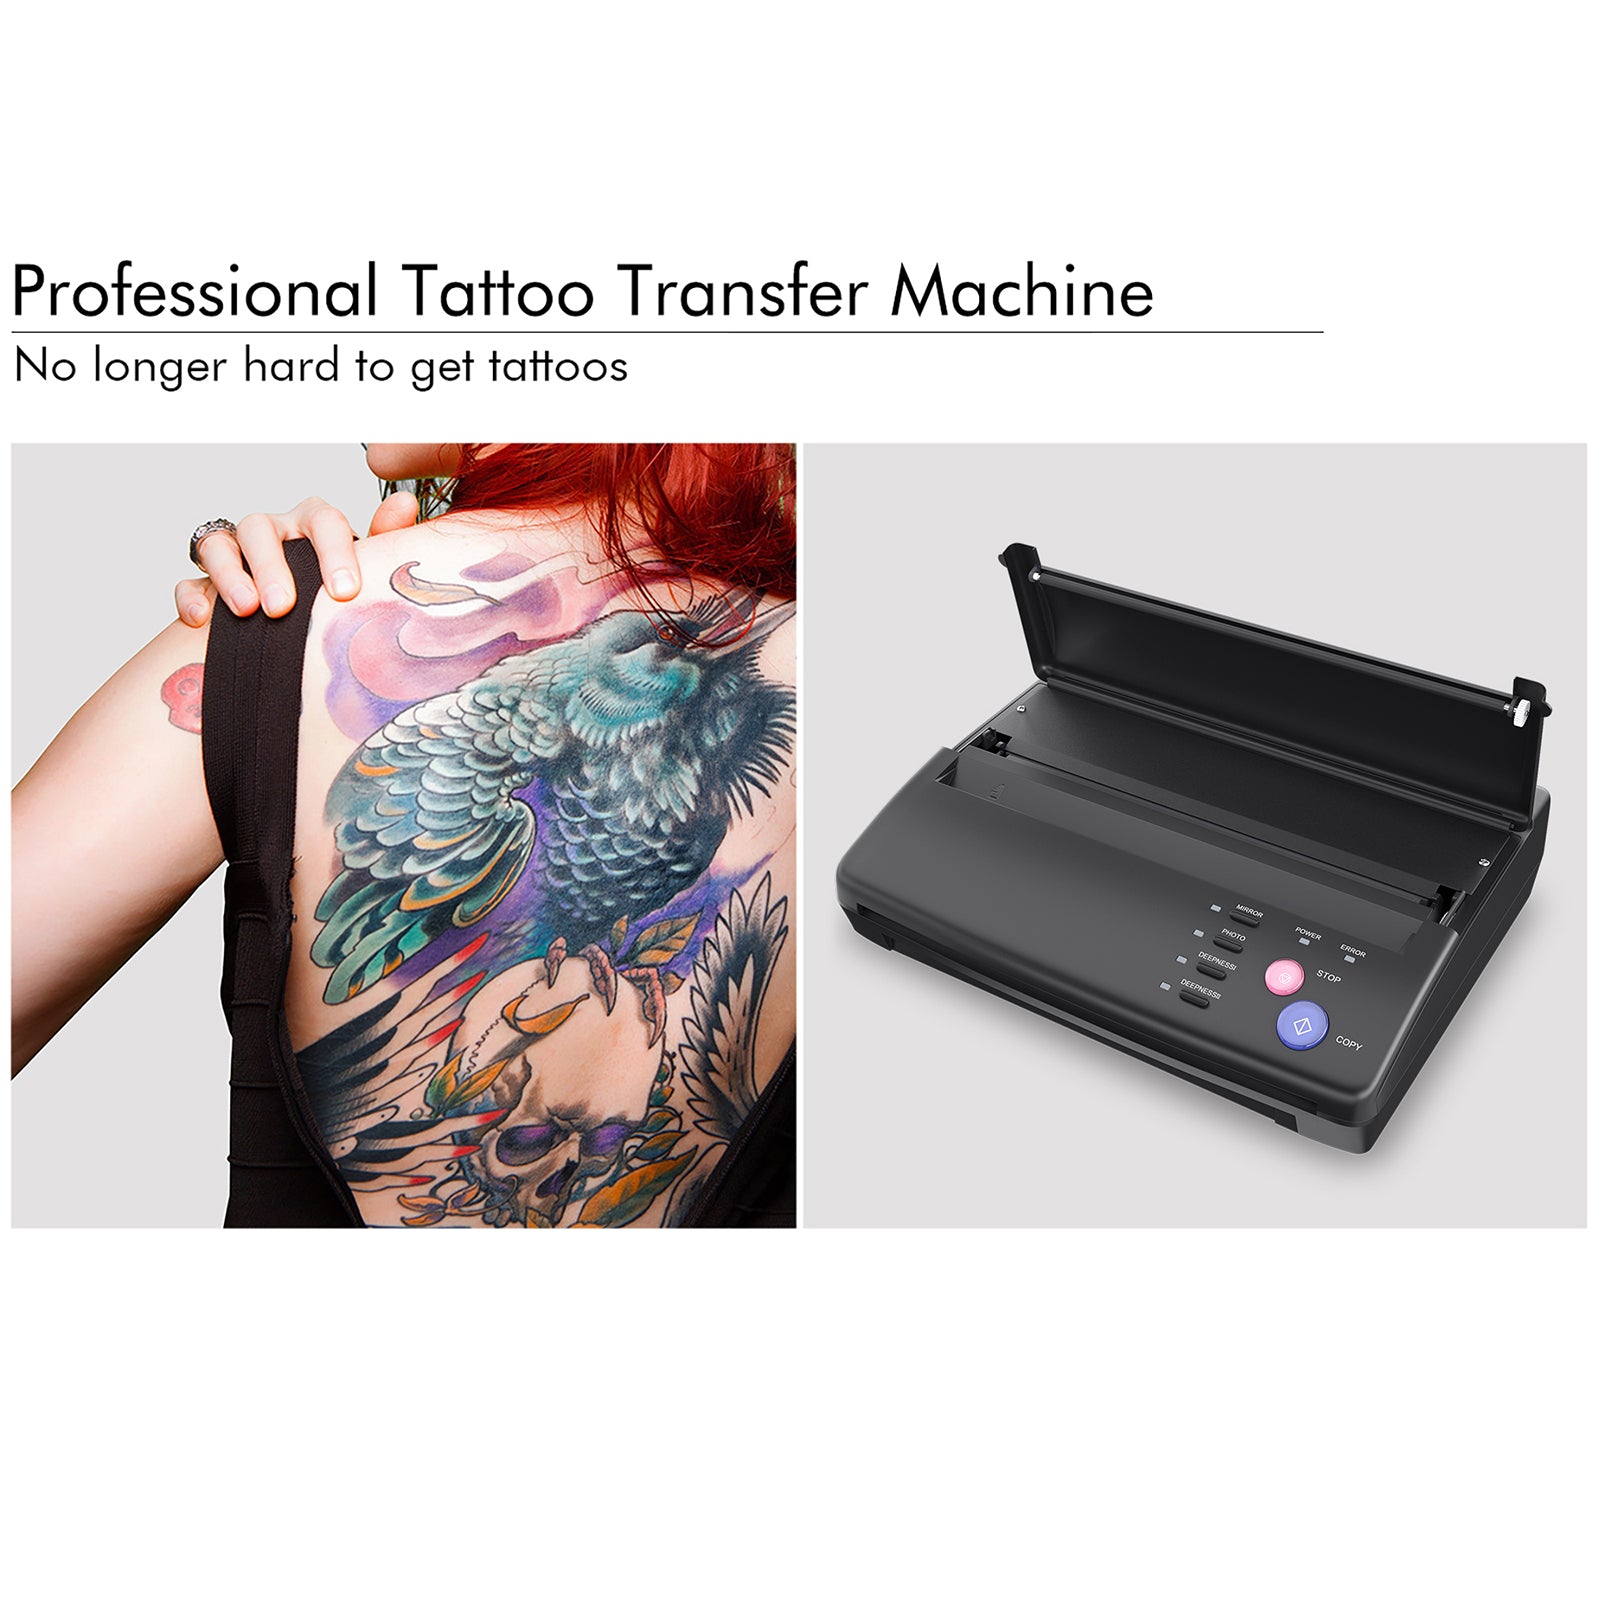 Tattoo machine 3D Model $7 - .unknown - Free3D